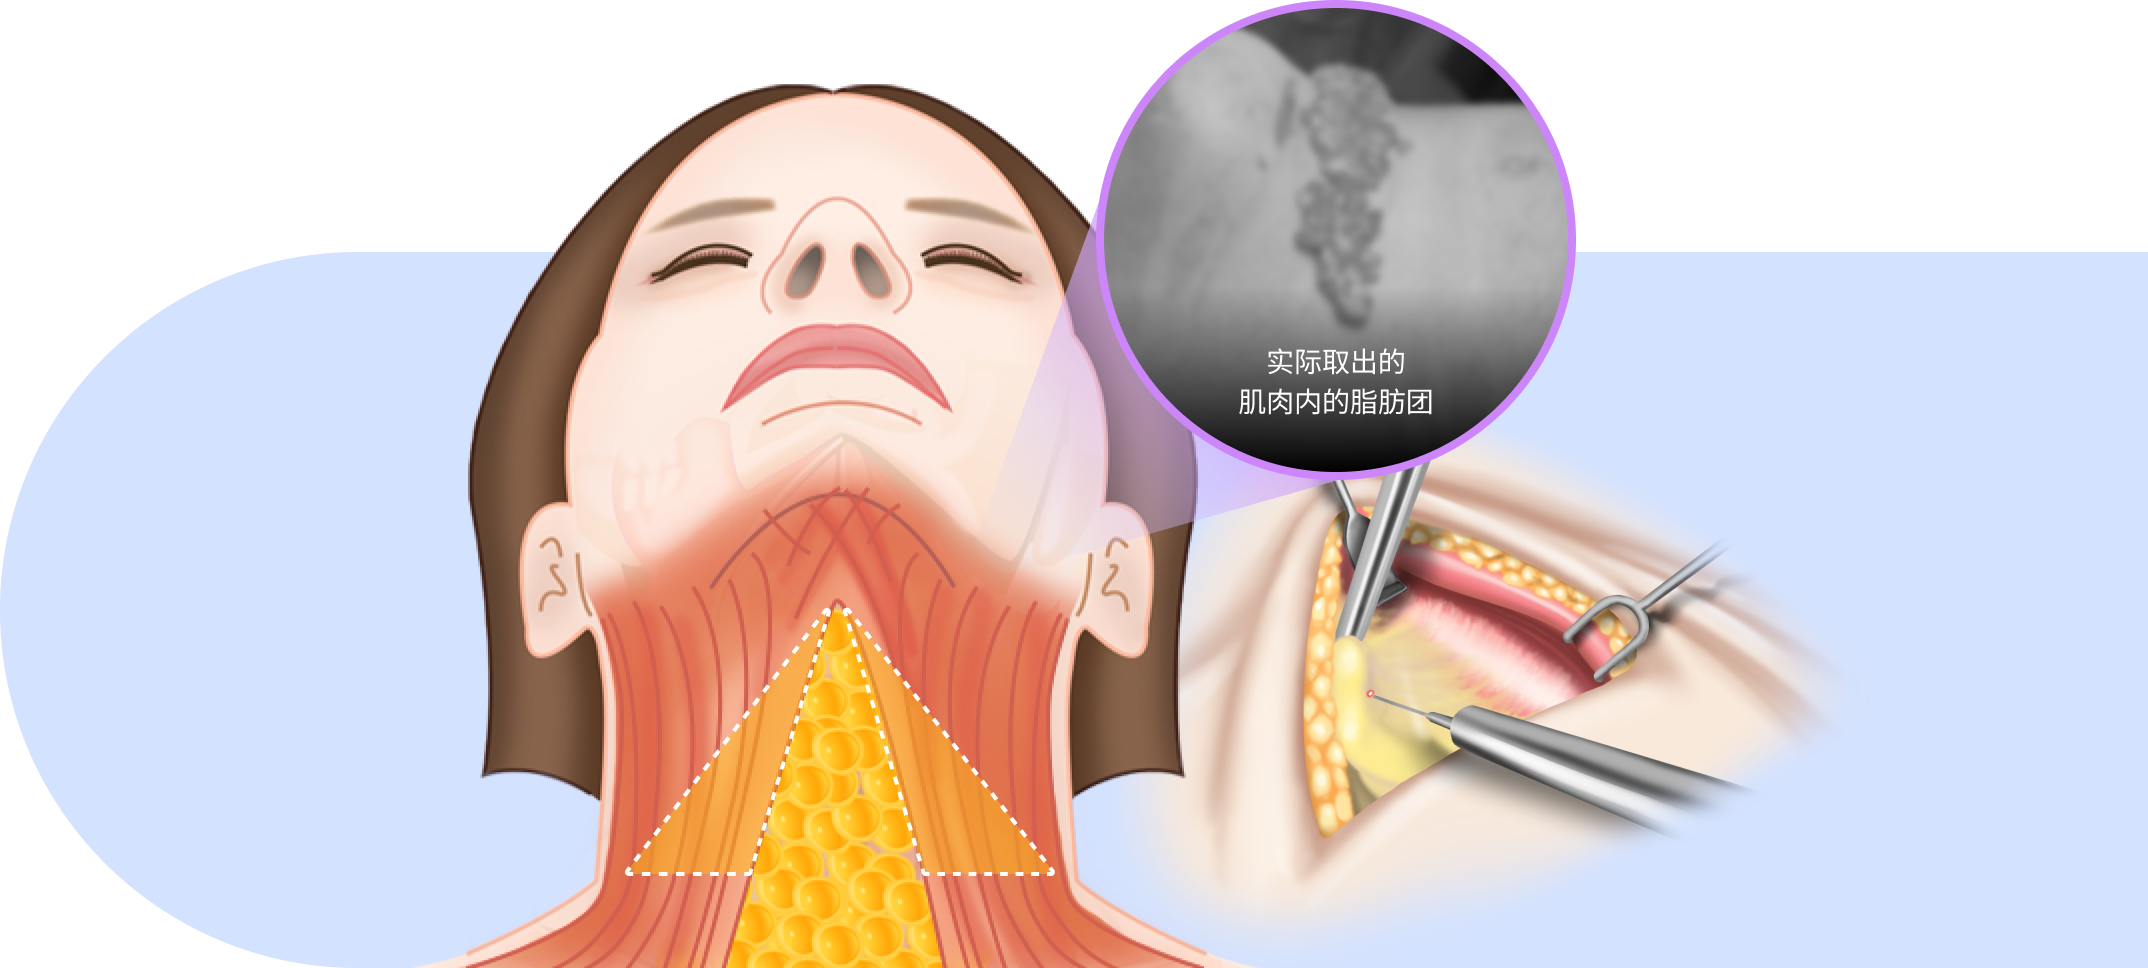 通过熟练的专业技术稳定去除肌肉内的脂肪块,提高下巴下方改善效果.